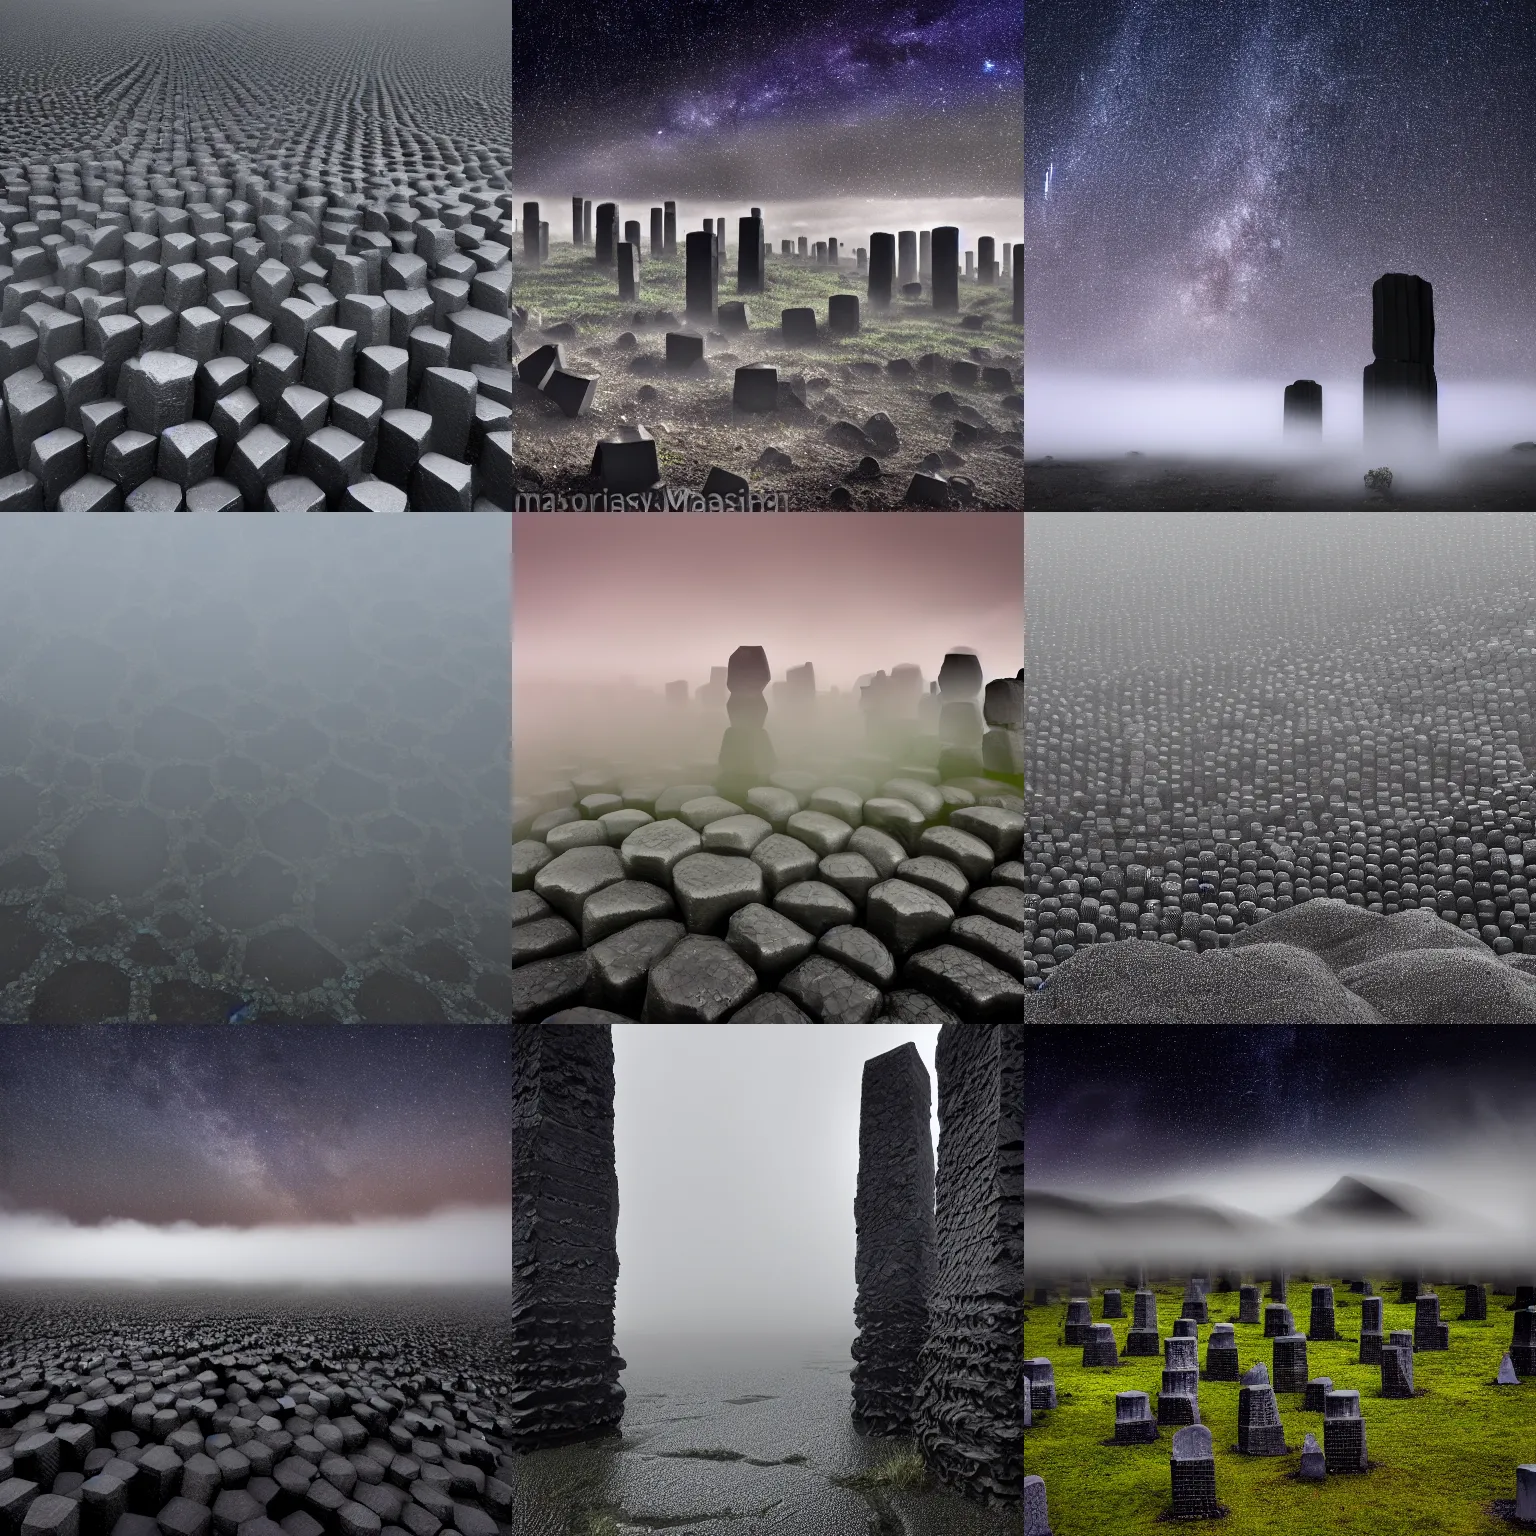 Prompt: field of hexagonal basalt columns, fog, dark, stars, wet, glossy, black, 4 k photo high quality trending on arstation